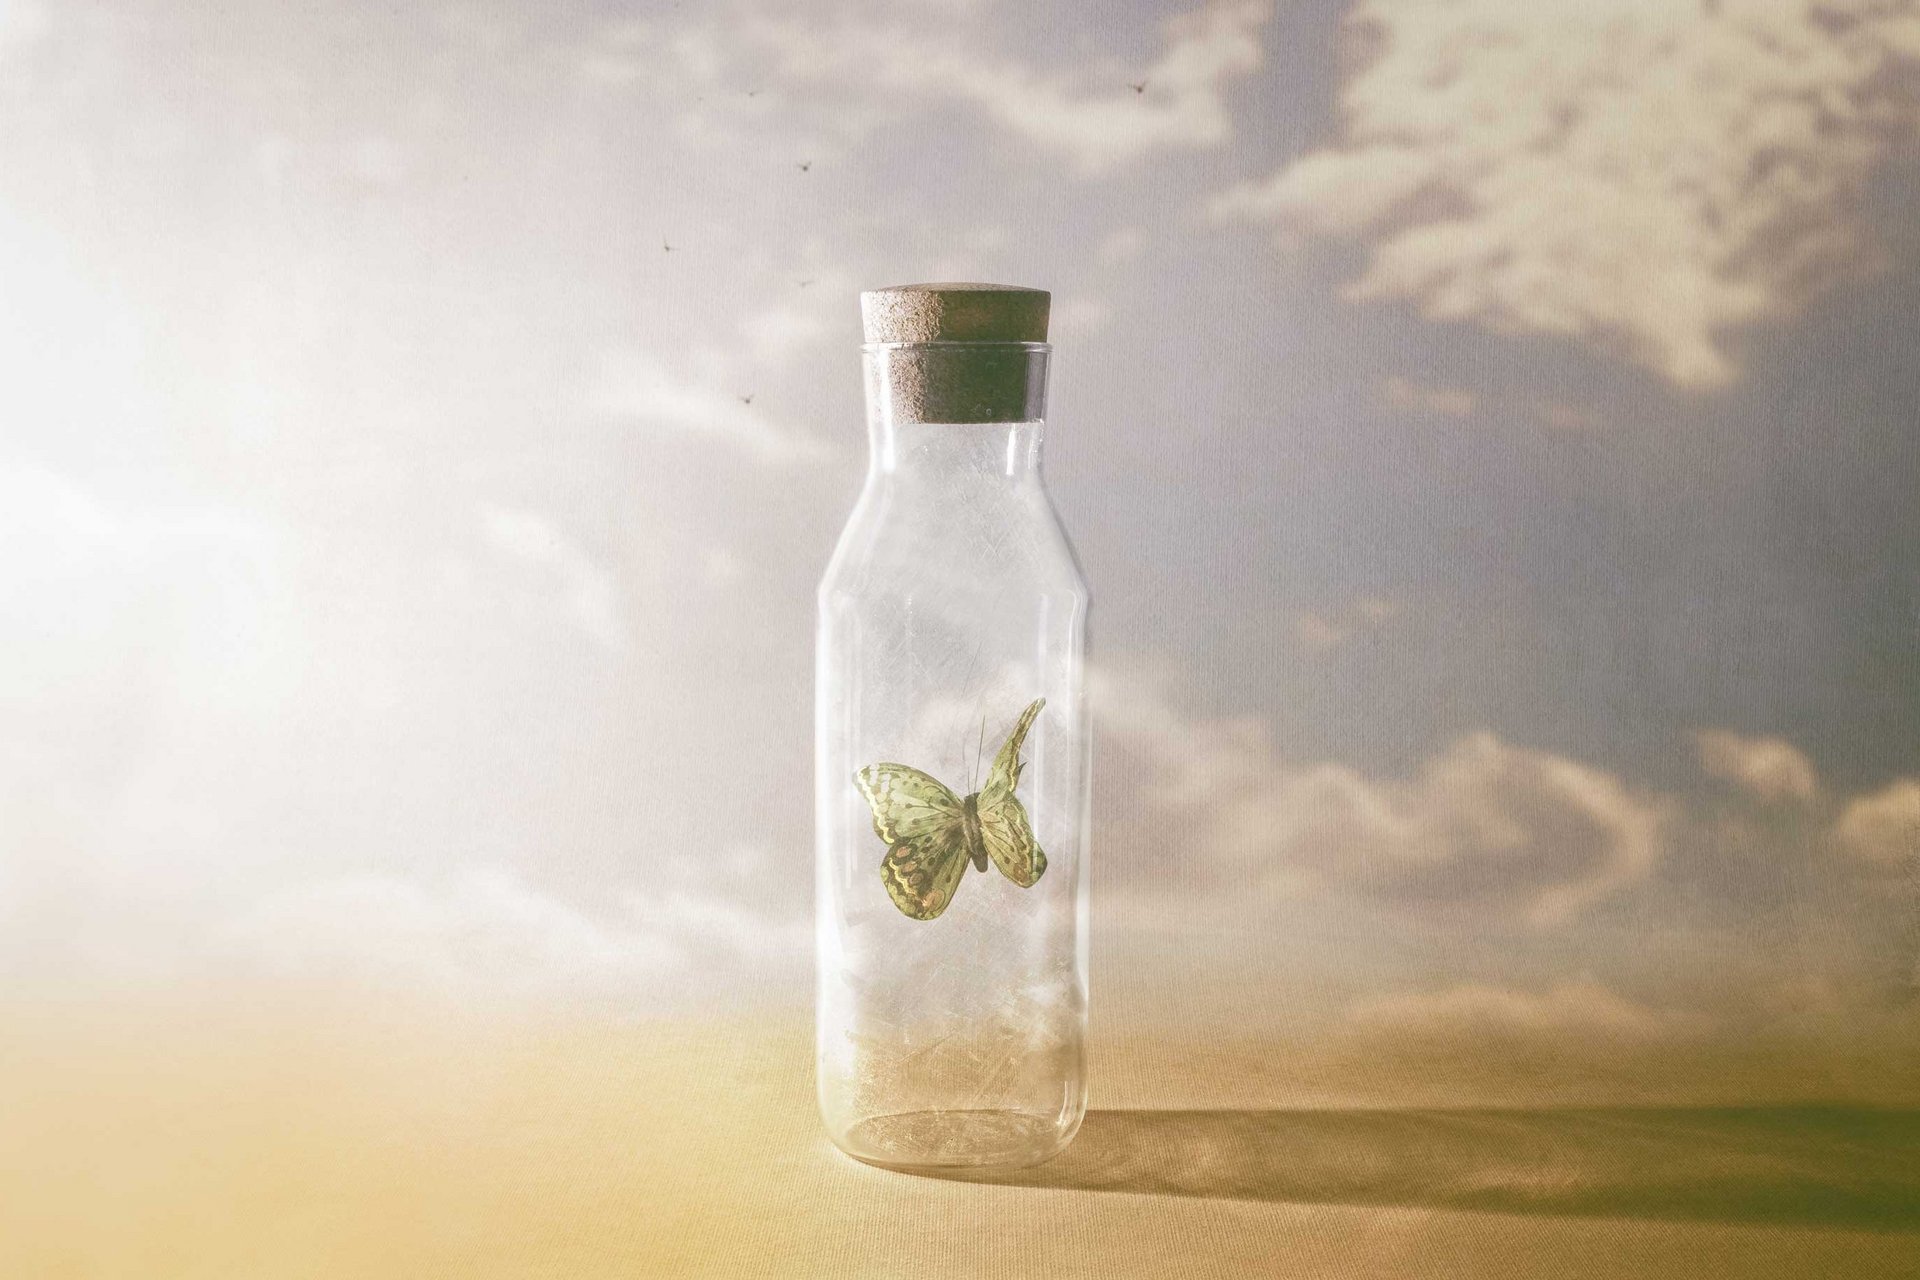 Schmetterling in einem geschlossenen Glas, um die Denkstörung zu symbolisieren